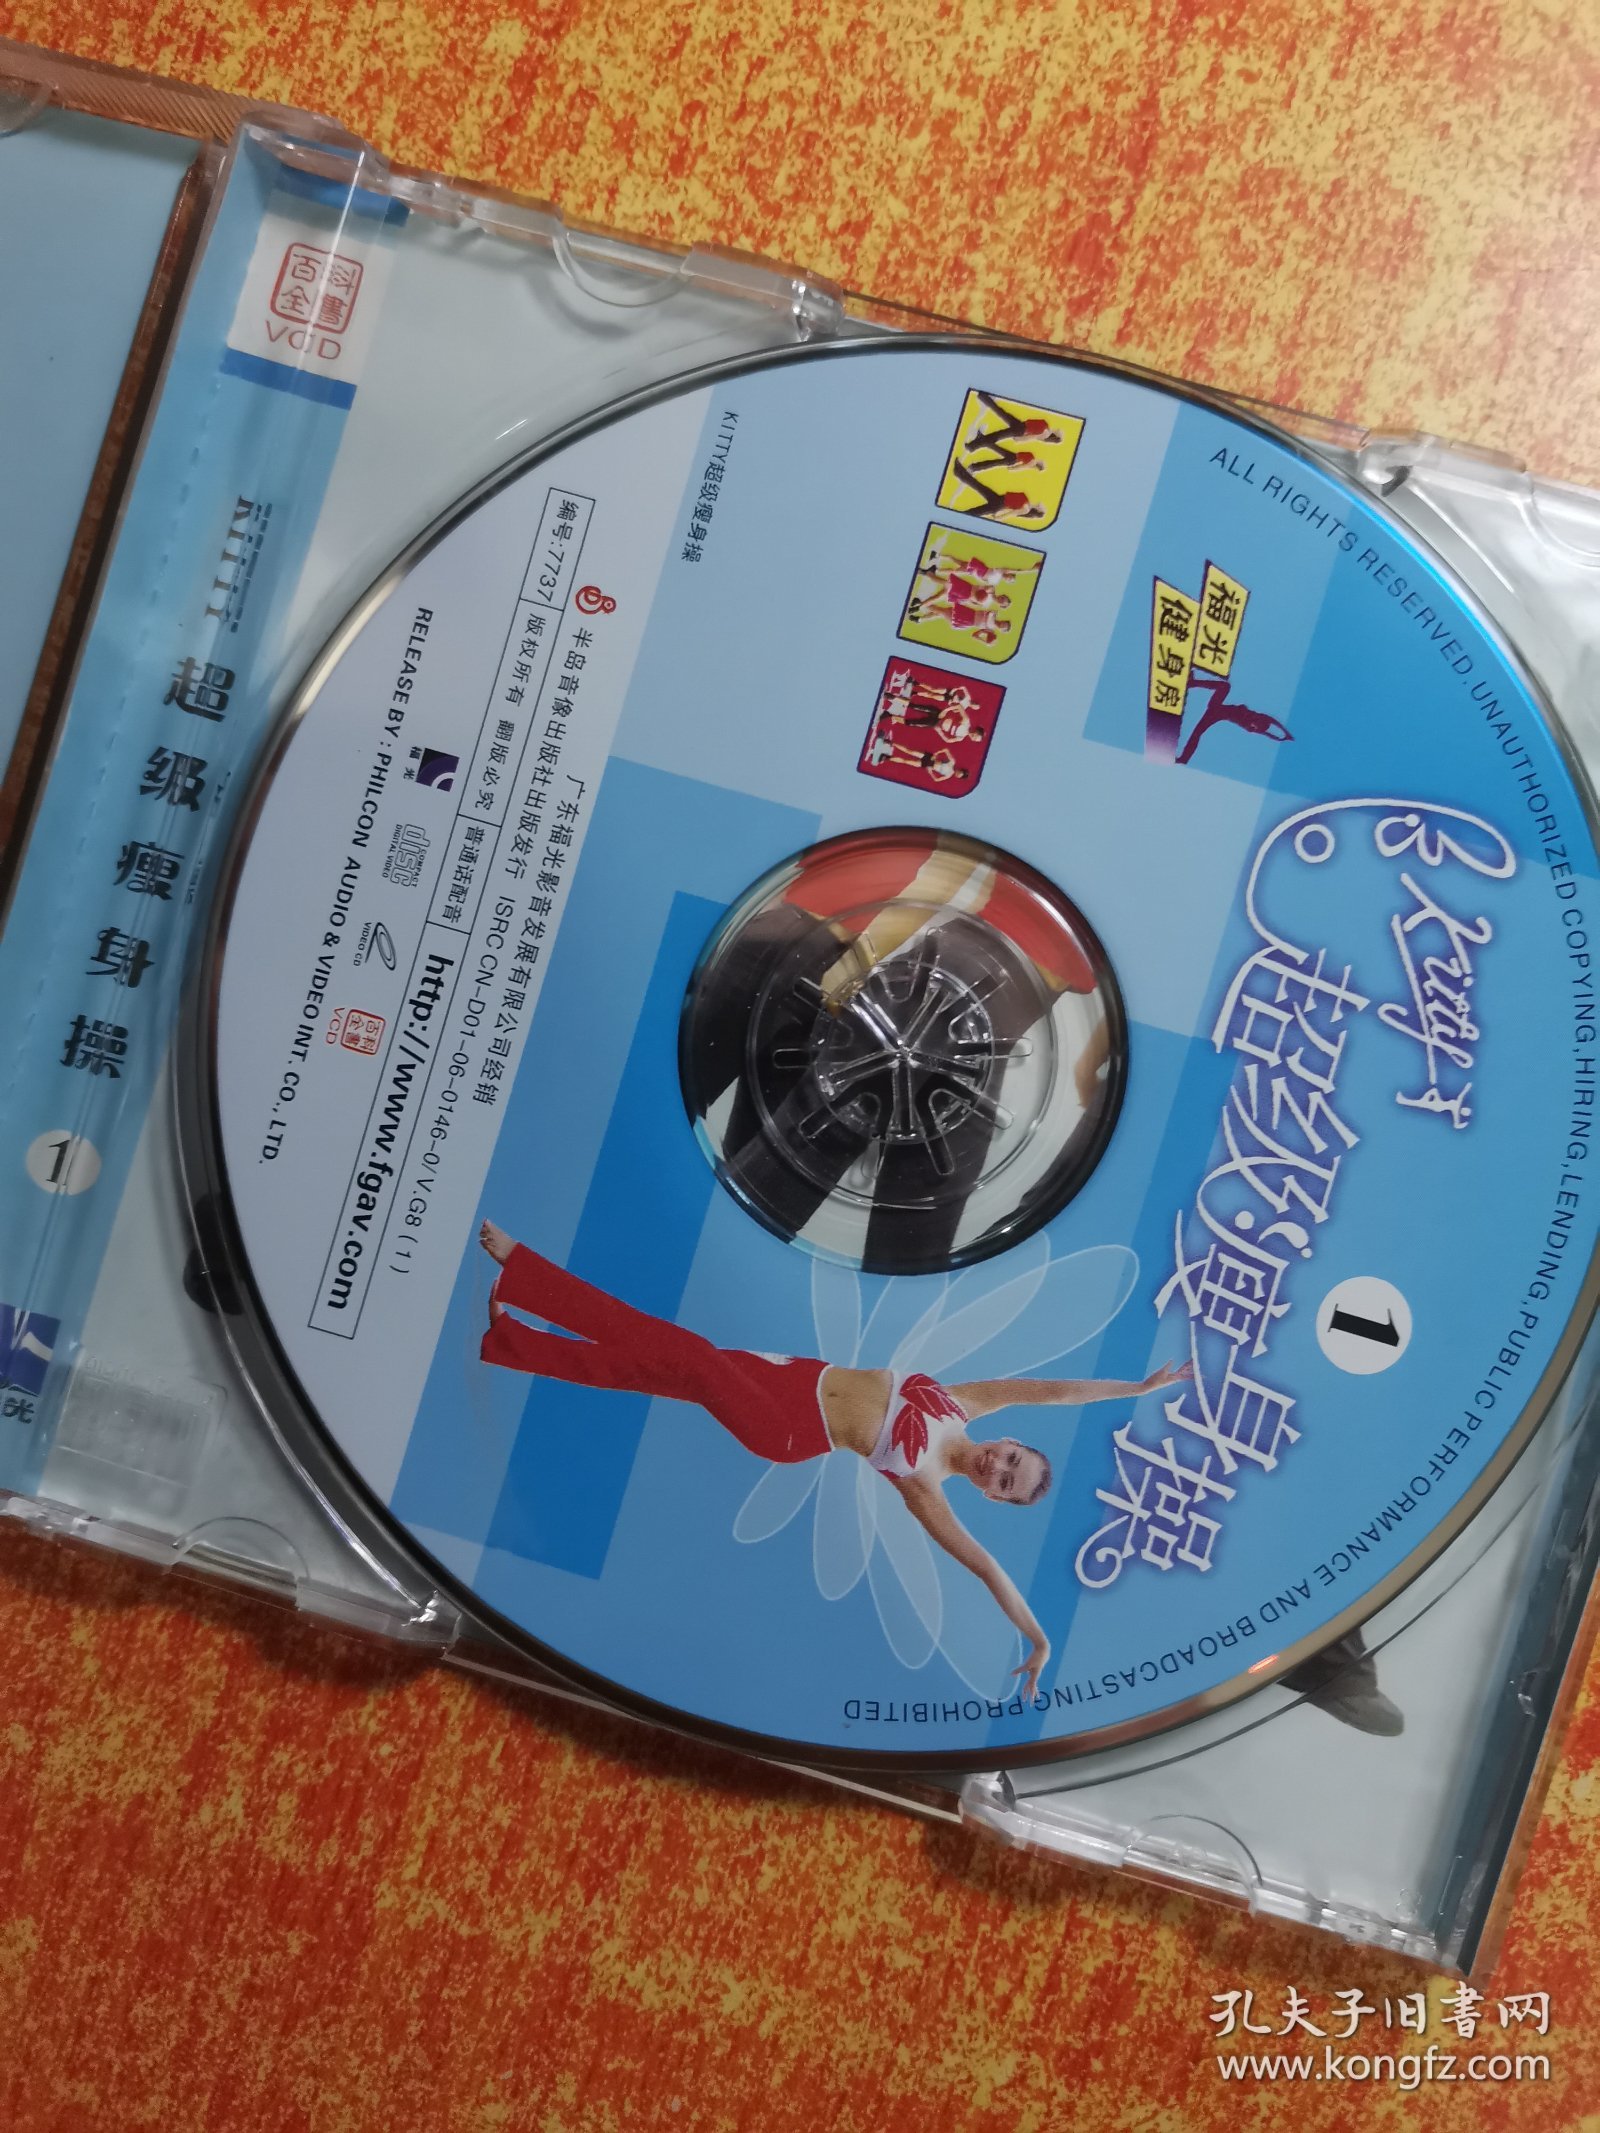 VCD 光盘 超级瘦身操 1